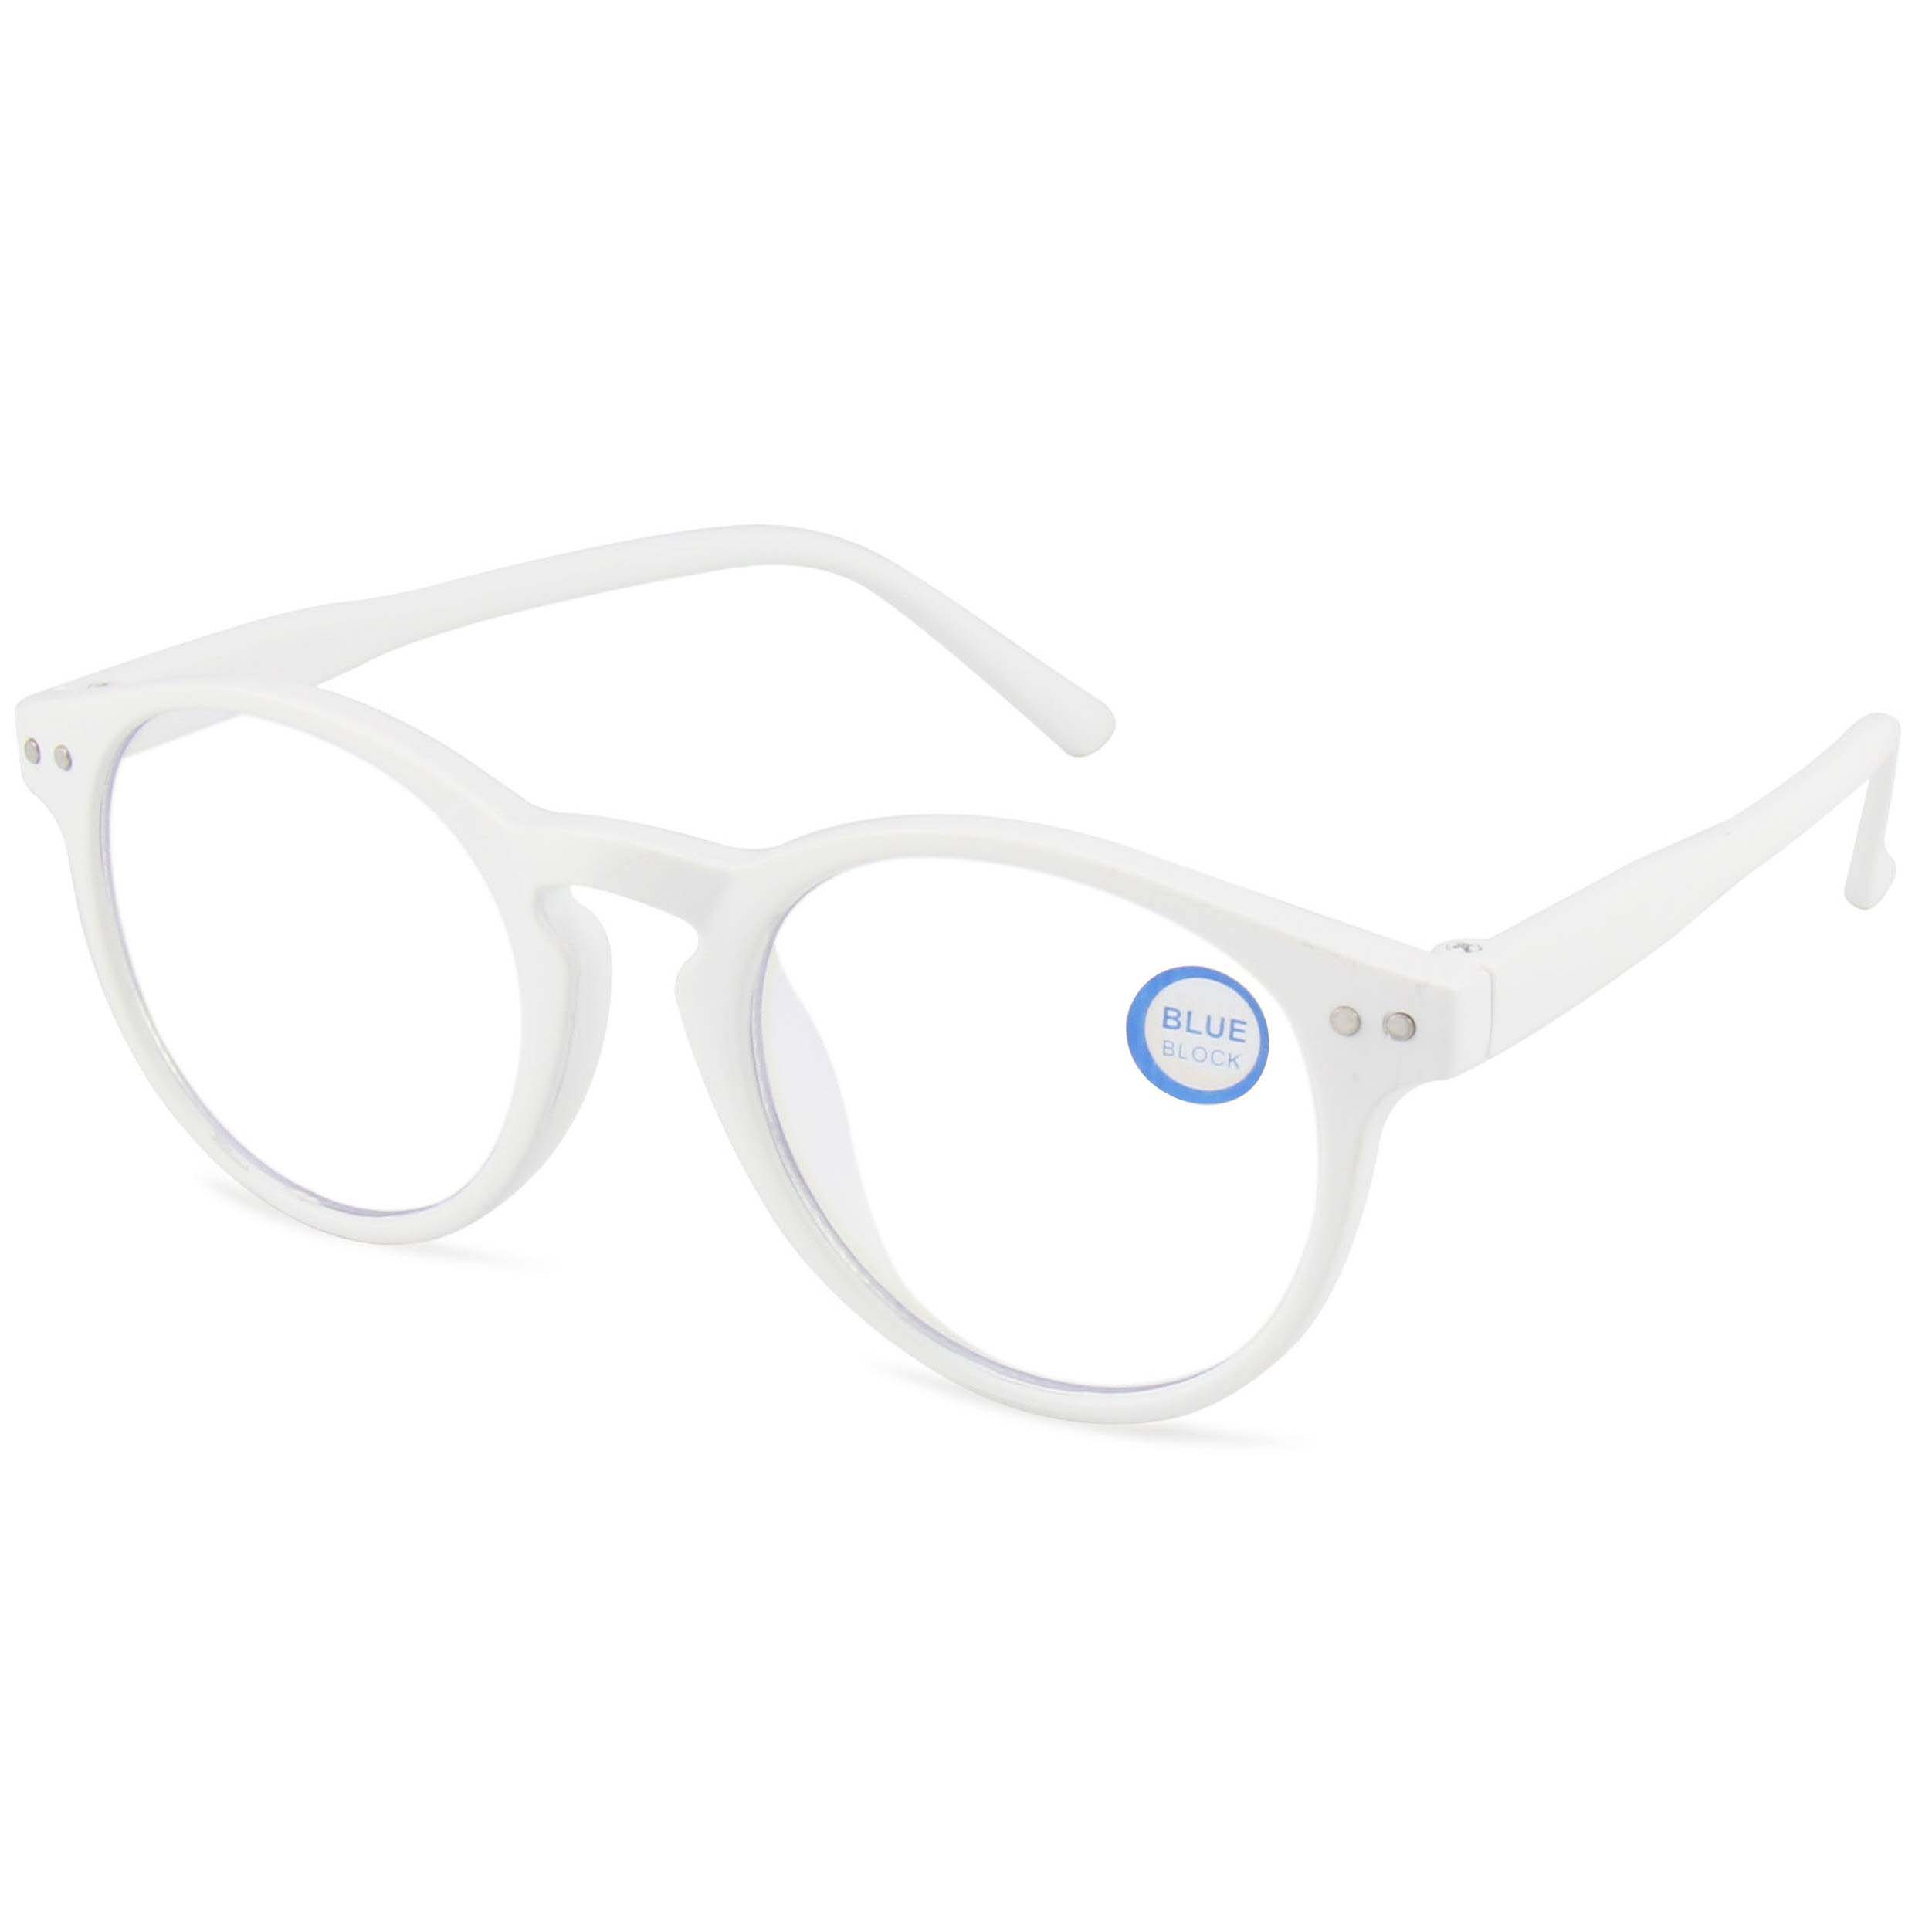 EUGENIA, отличные круглые оправы в стиле Qcomuality, оптические оправы для глаз, блокирующие синий свет, очки для очков